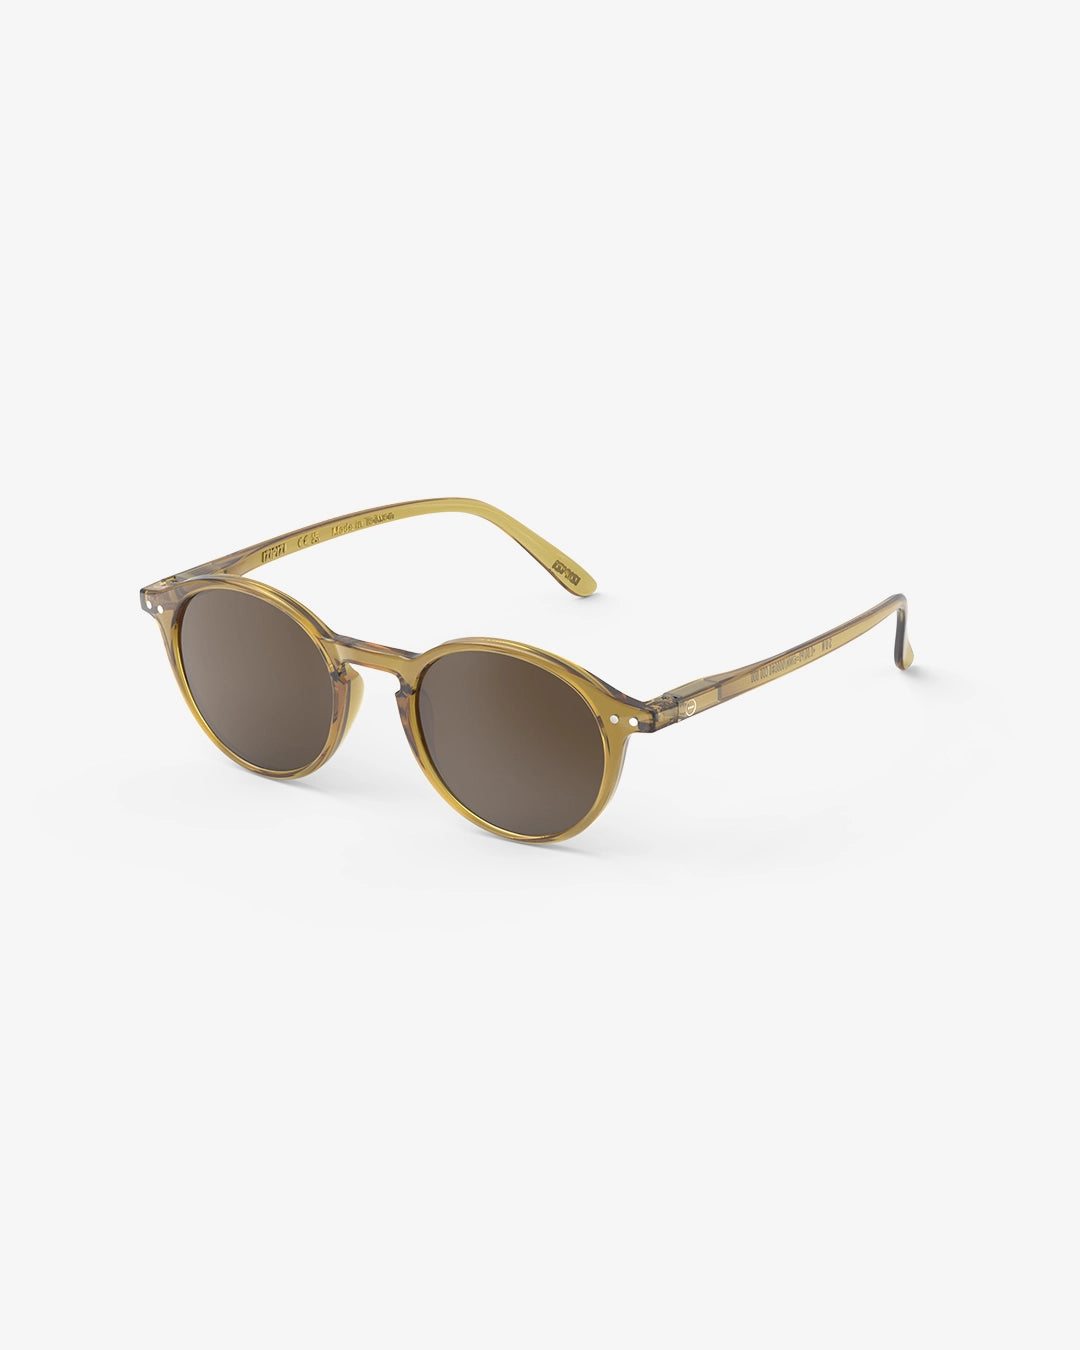 Sunglasses  - #D Shape Golden Green